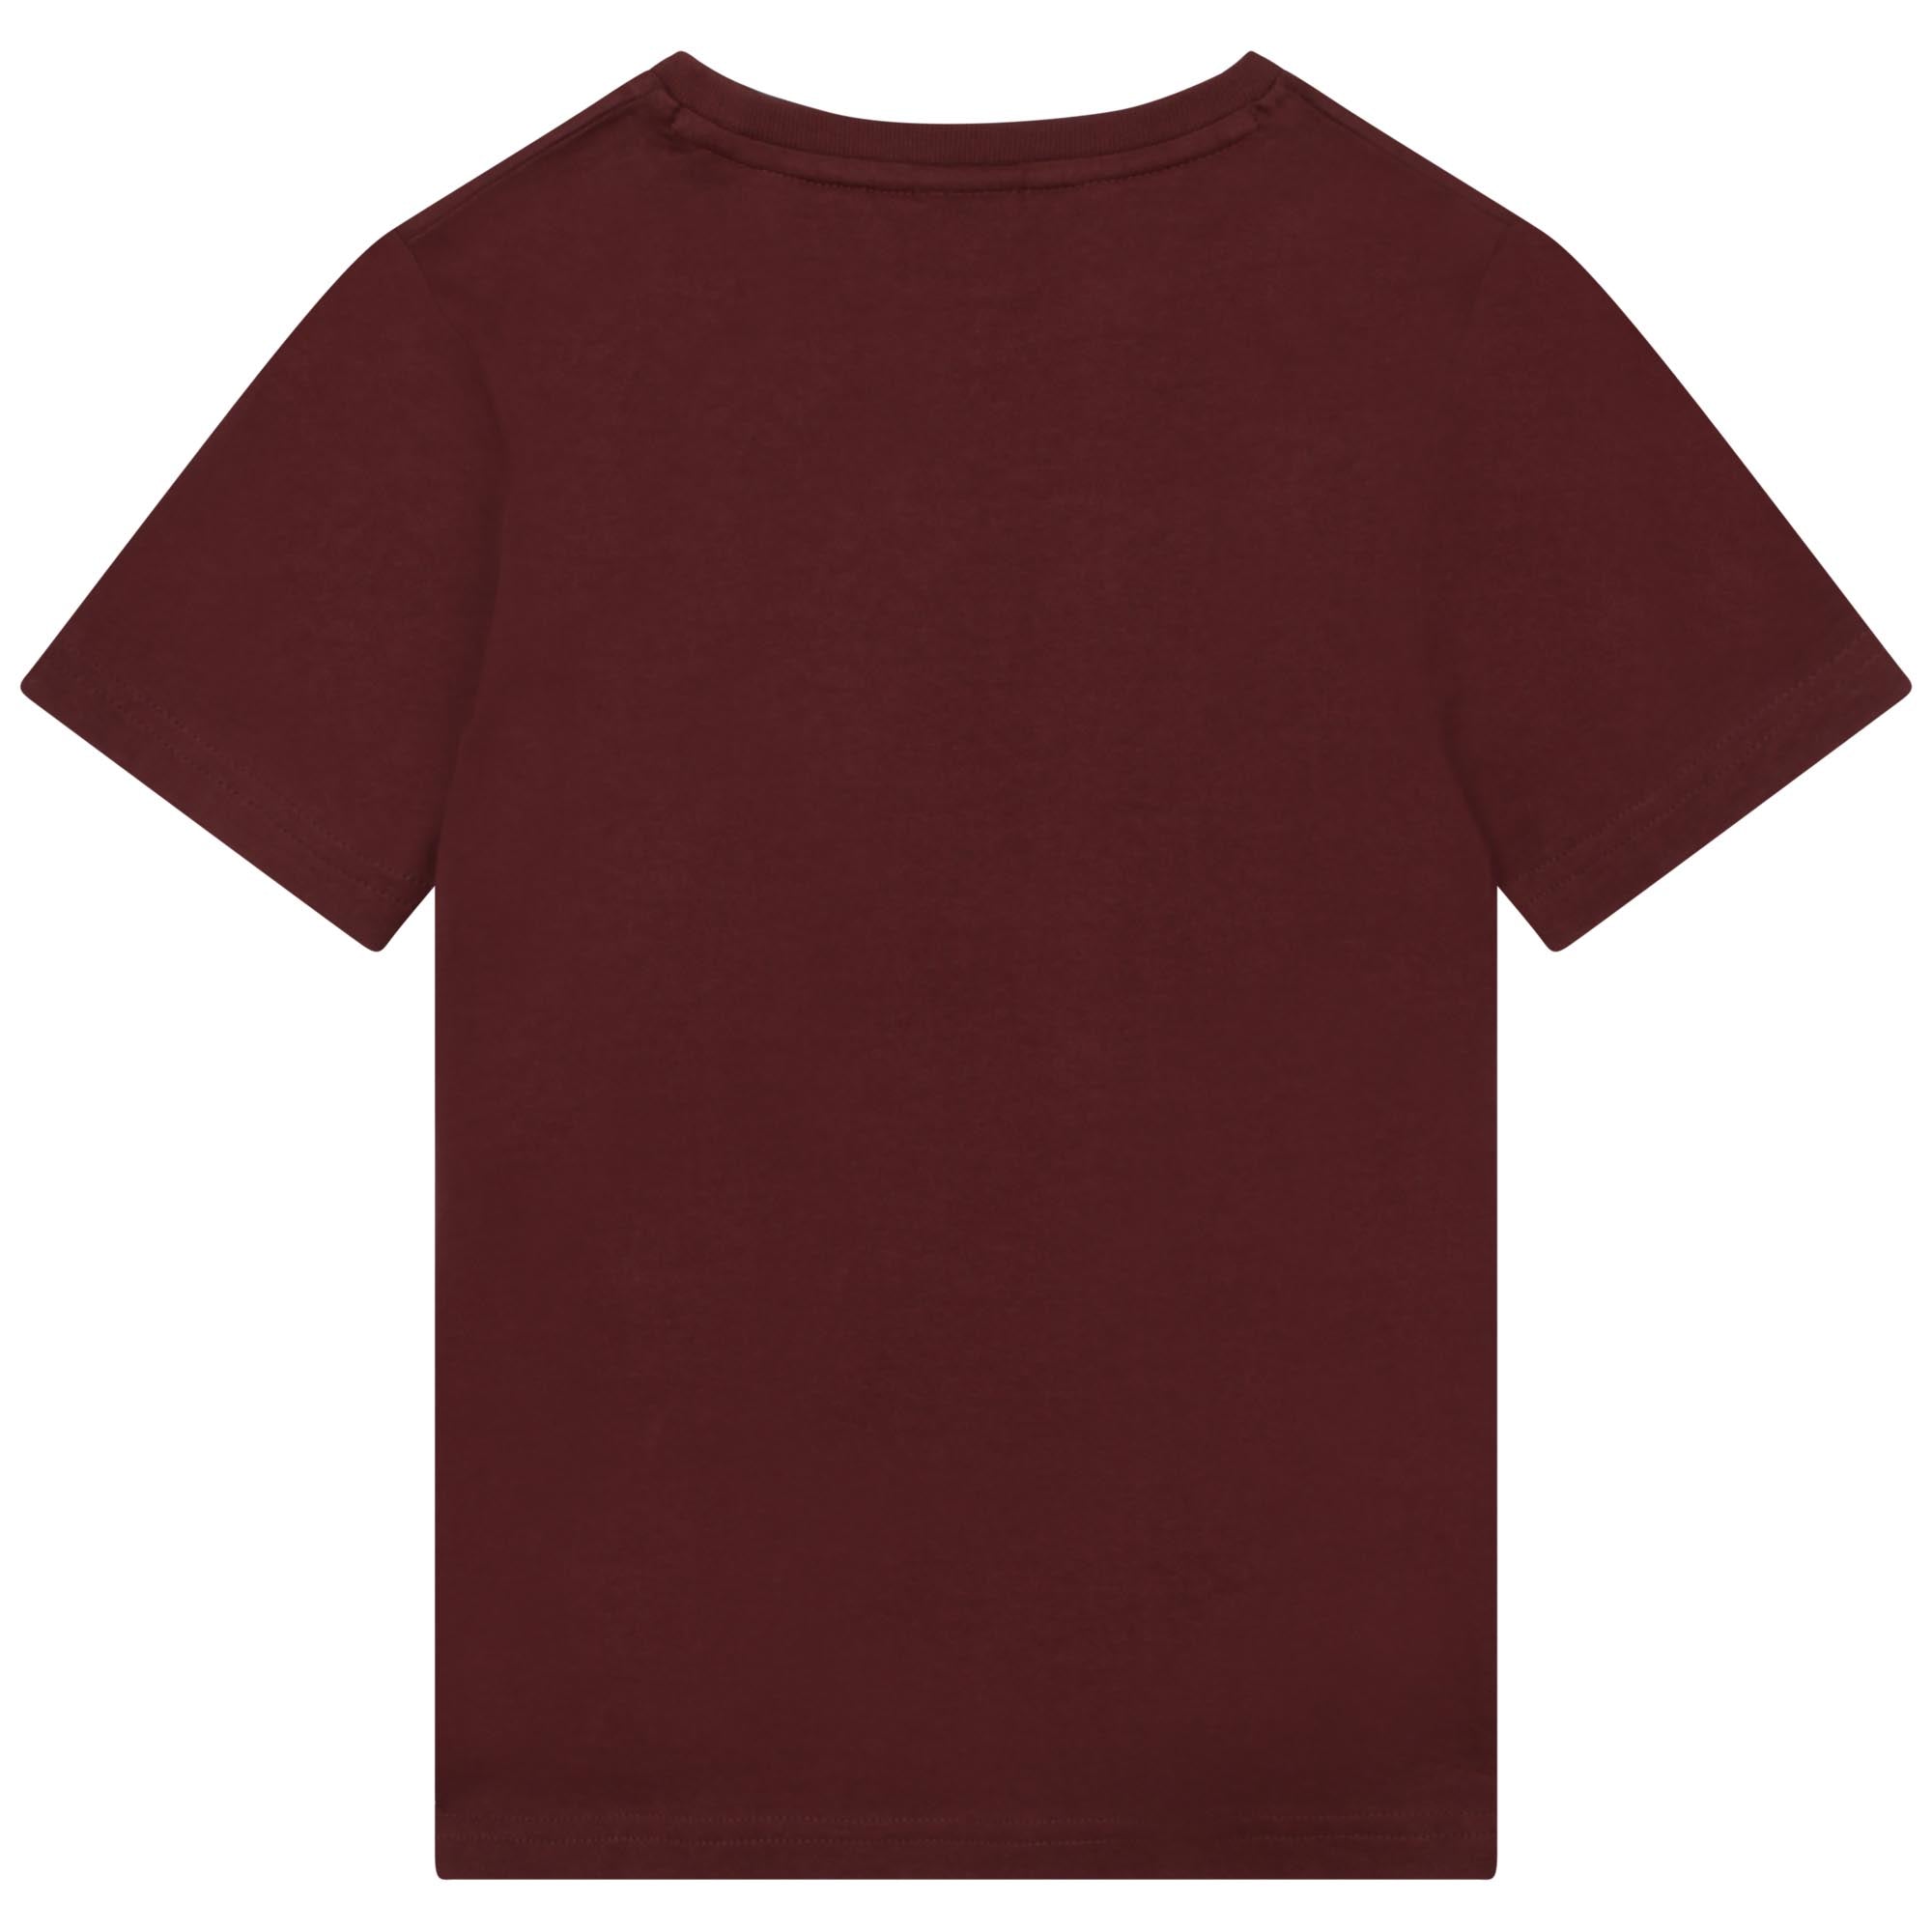 Boys Dark Red Cotton T-Shirt